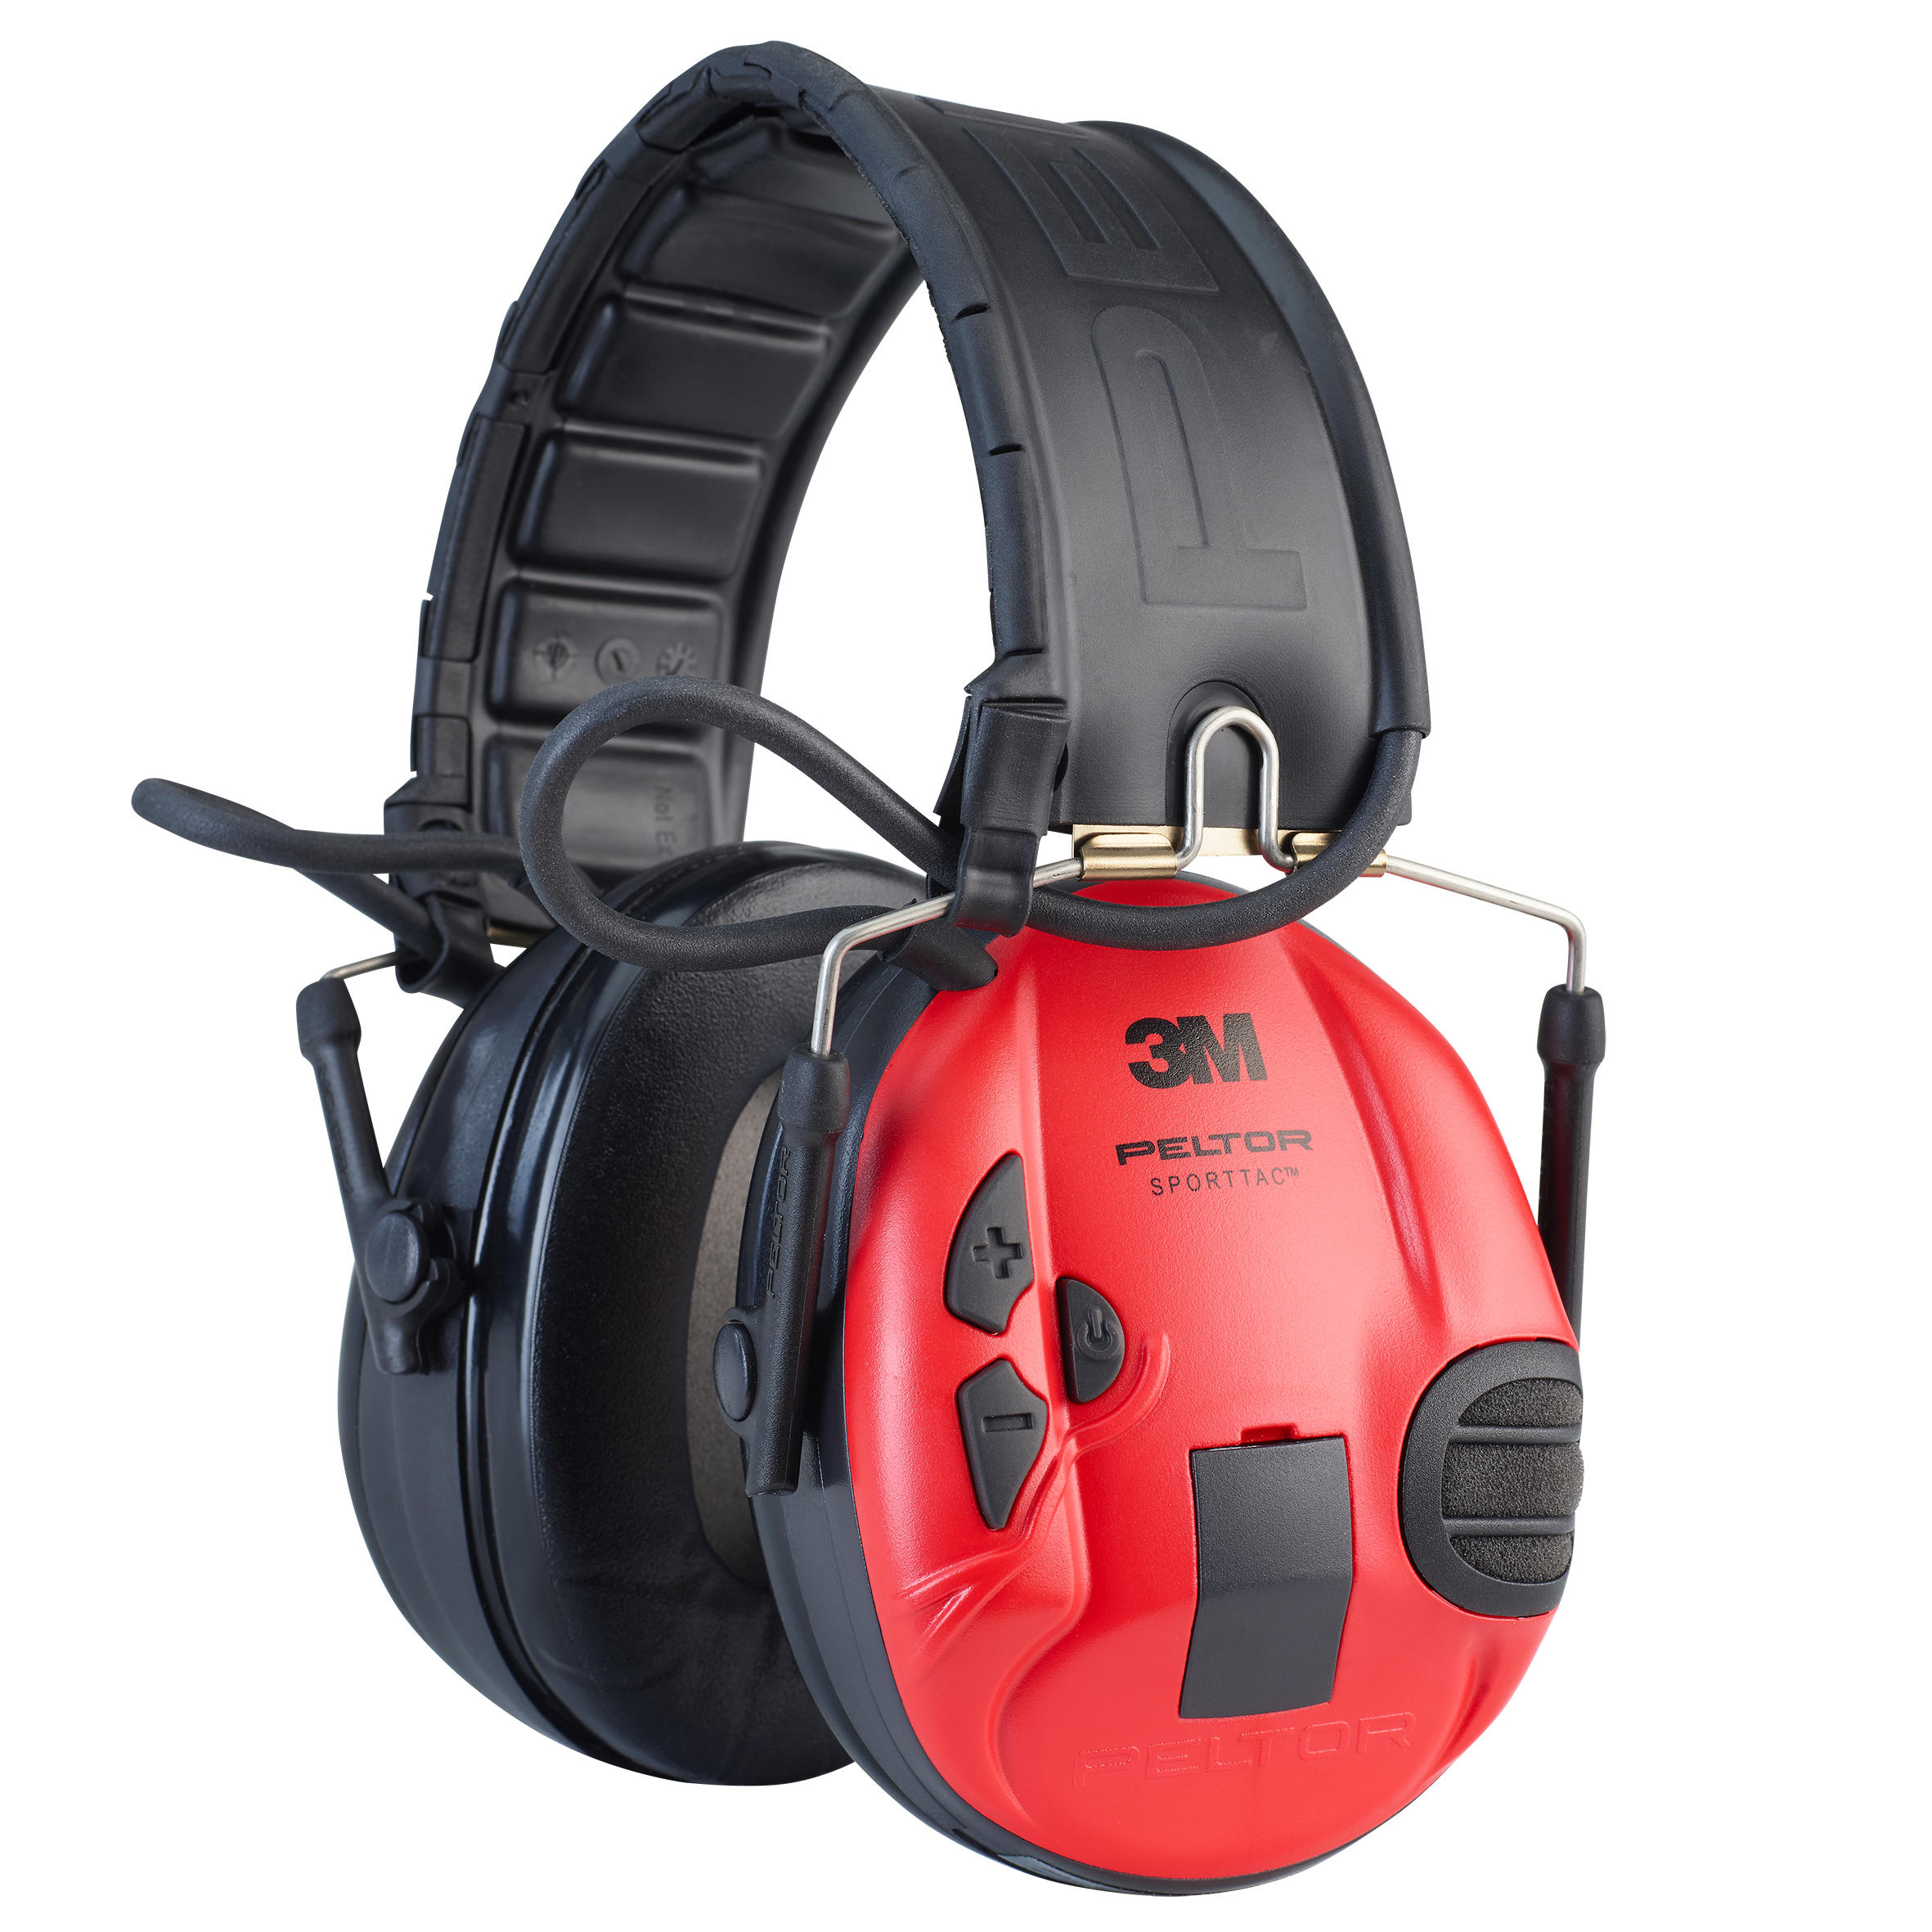 3M Casque de protection auditive actif Peltor SportTac noir rouge - 3M - SANS TAILLE